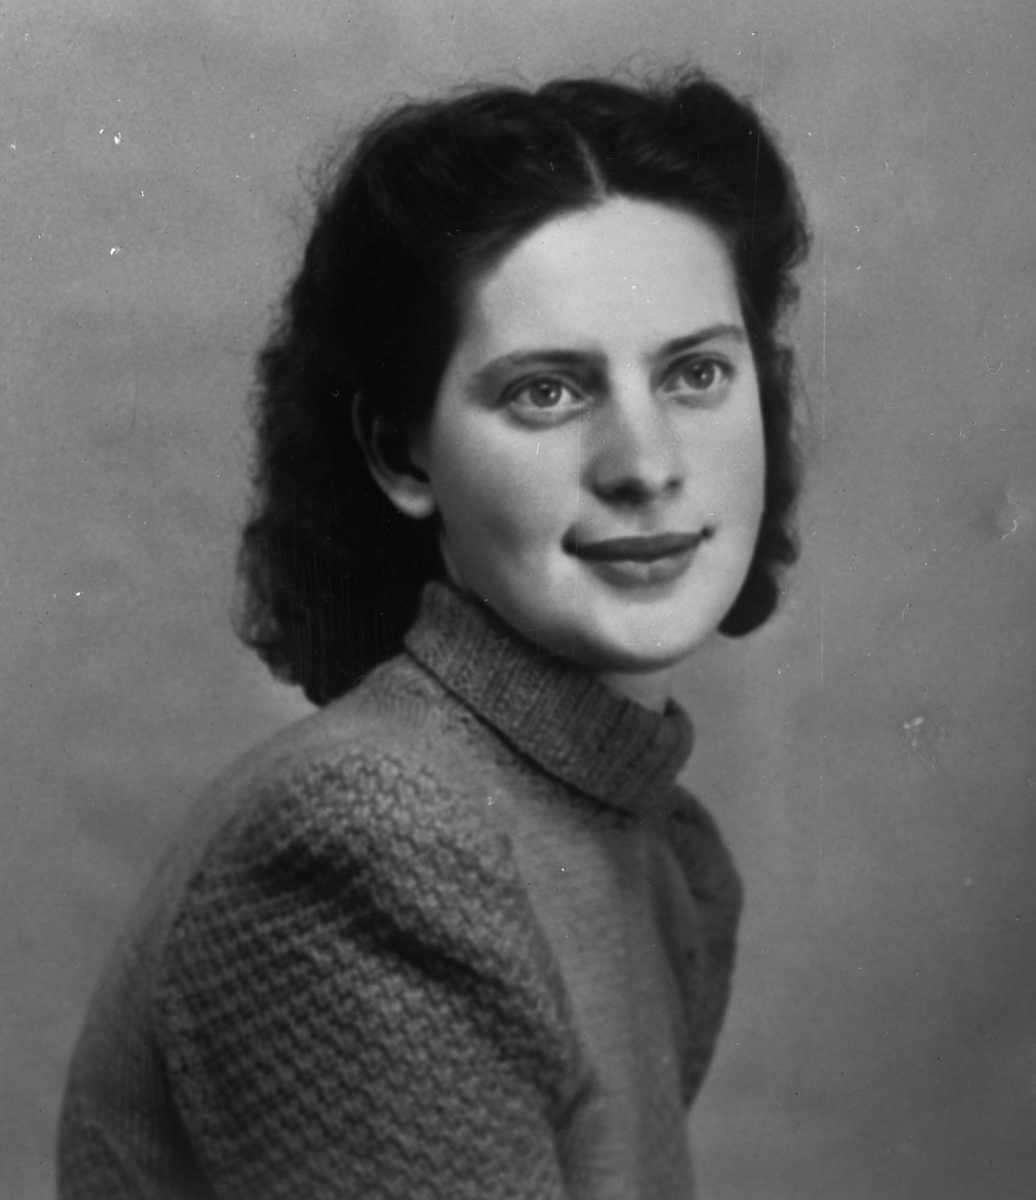 Repro, Ateljébild kvinna ”Astrid Holm” februari 1942,
	metallutfällning, rosa missfärgning.